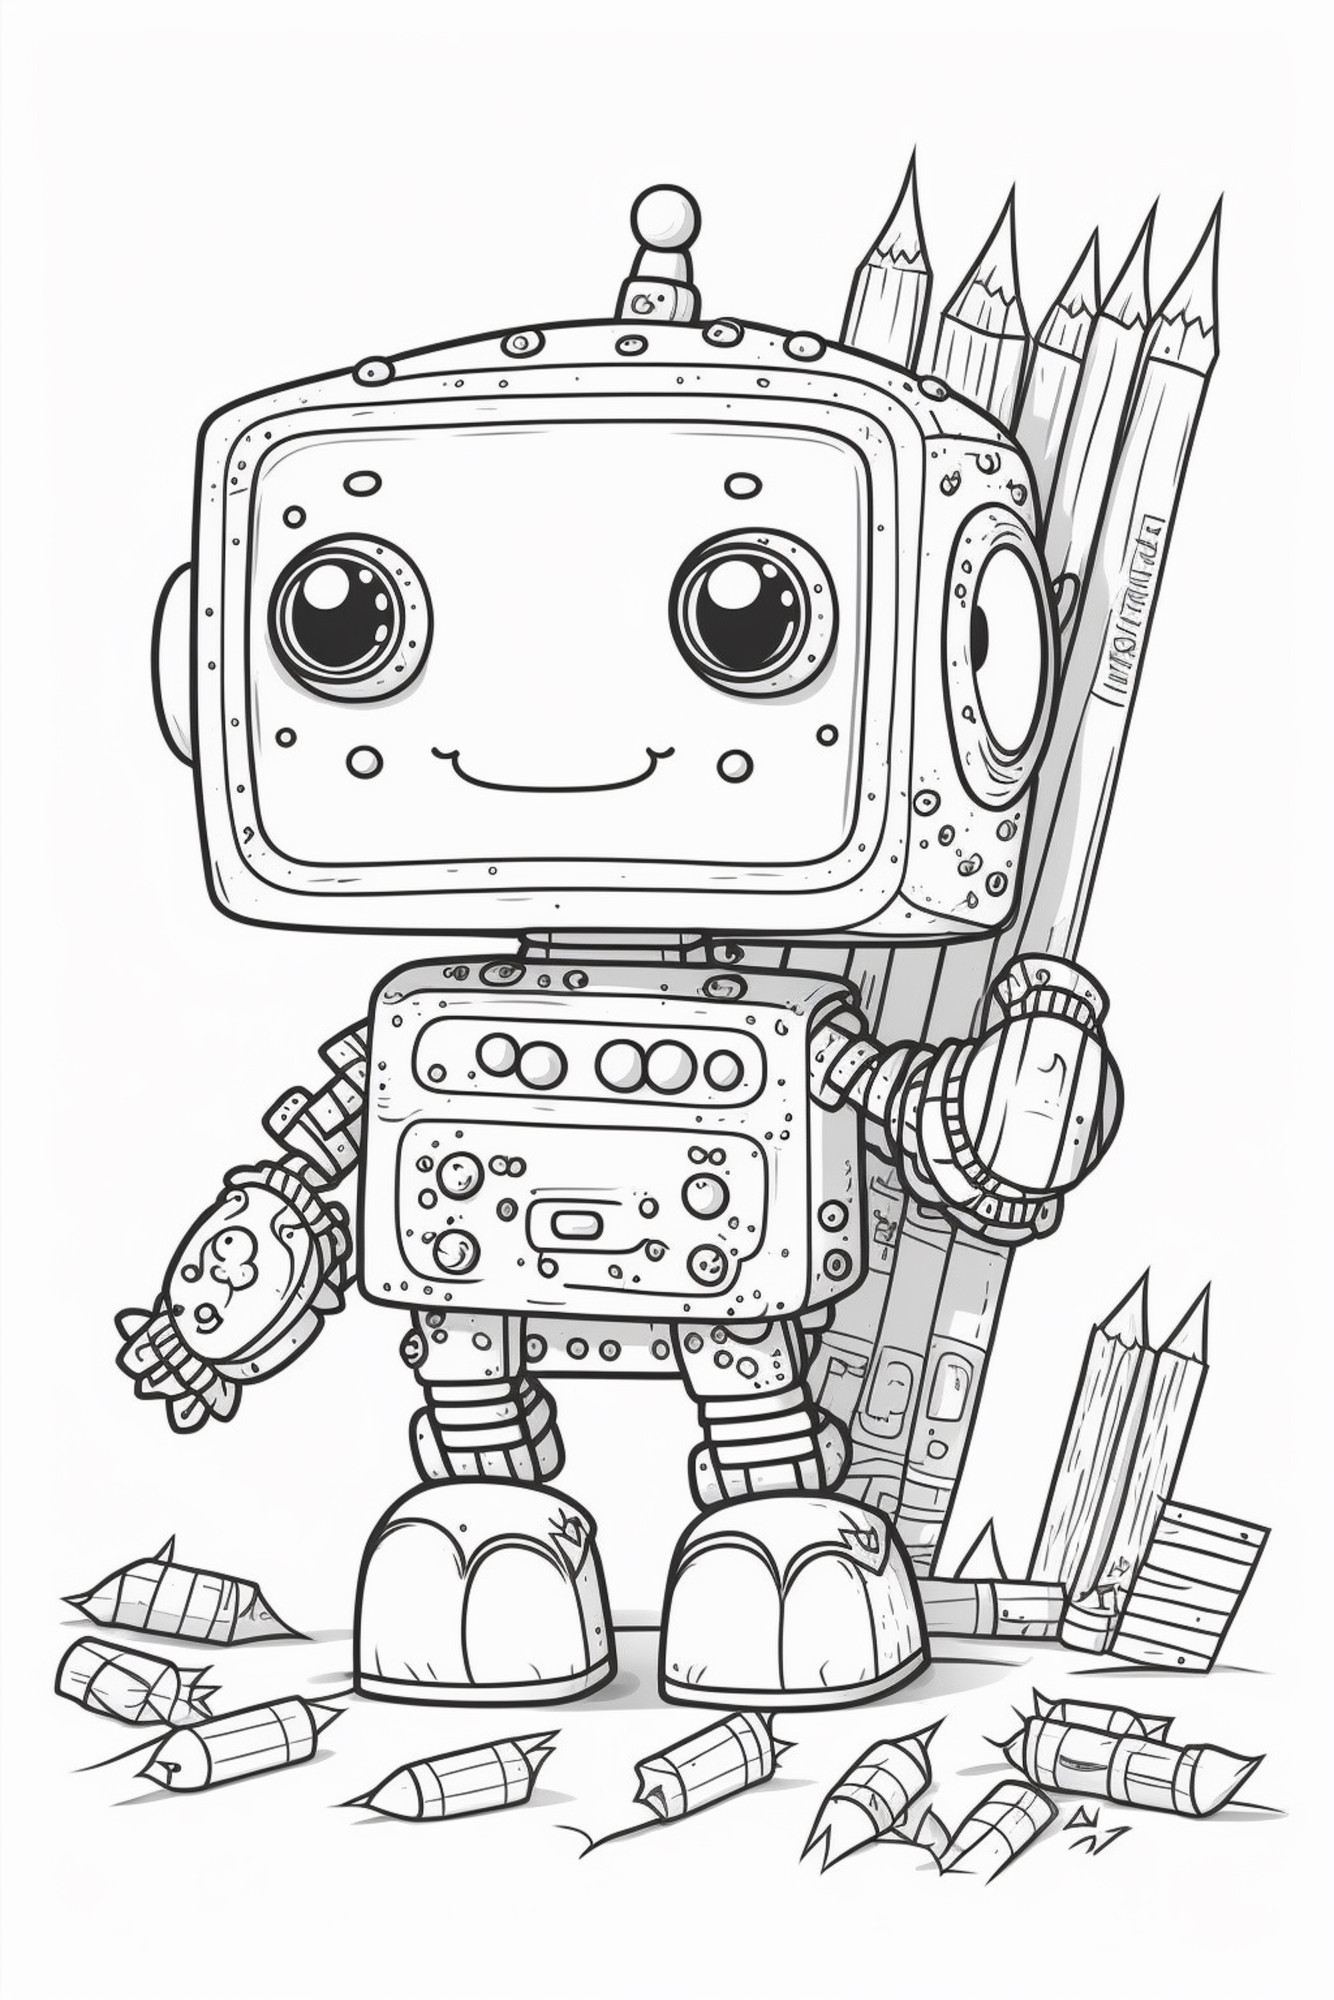 Раскраска для детей: робот с карандашами